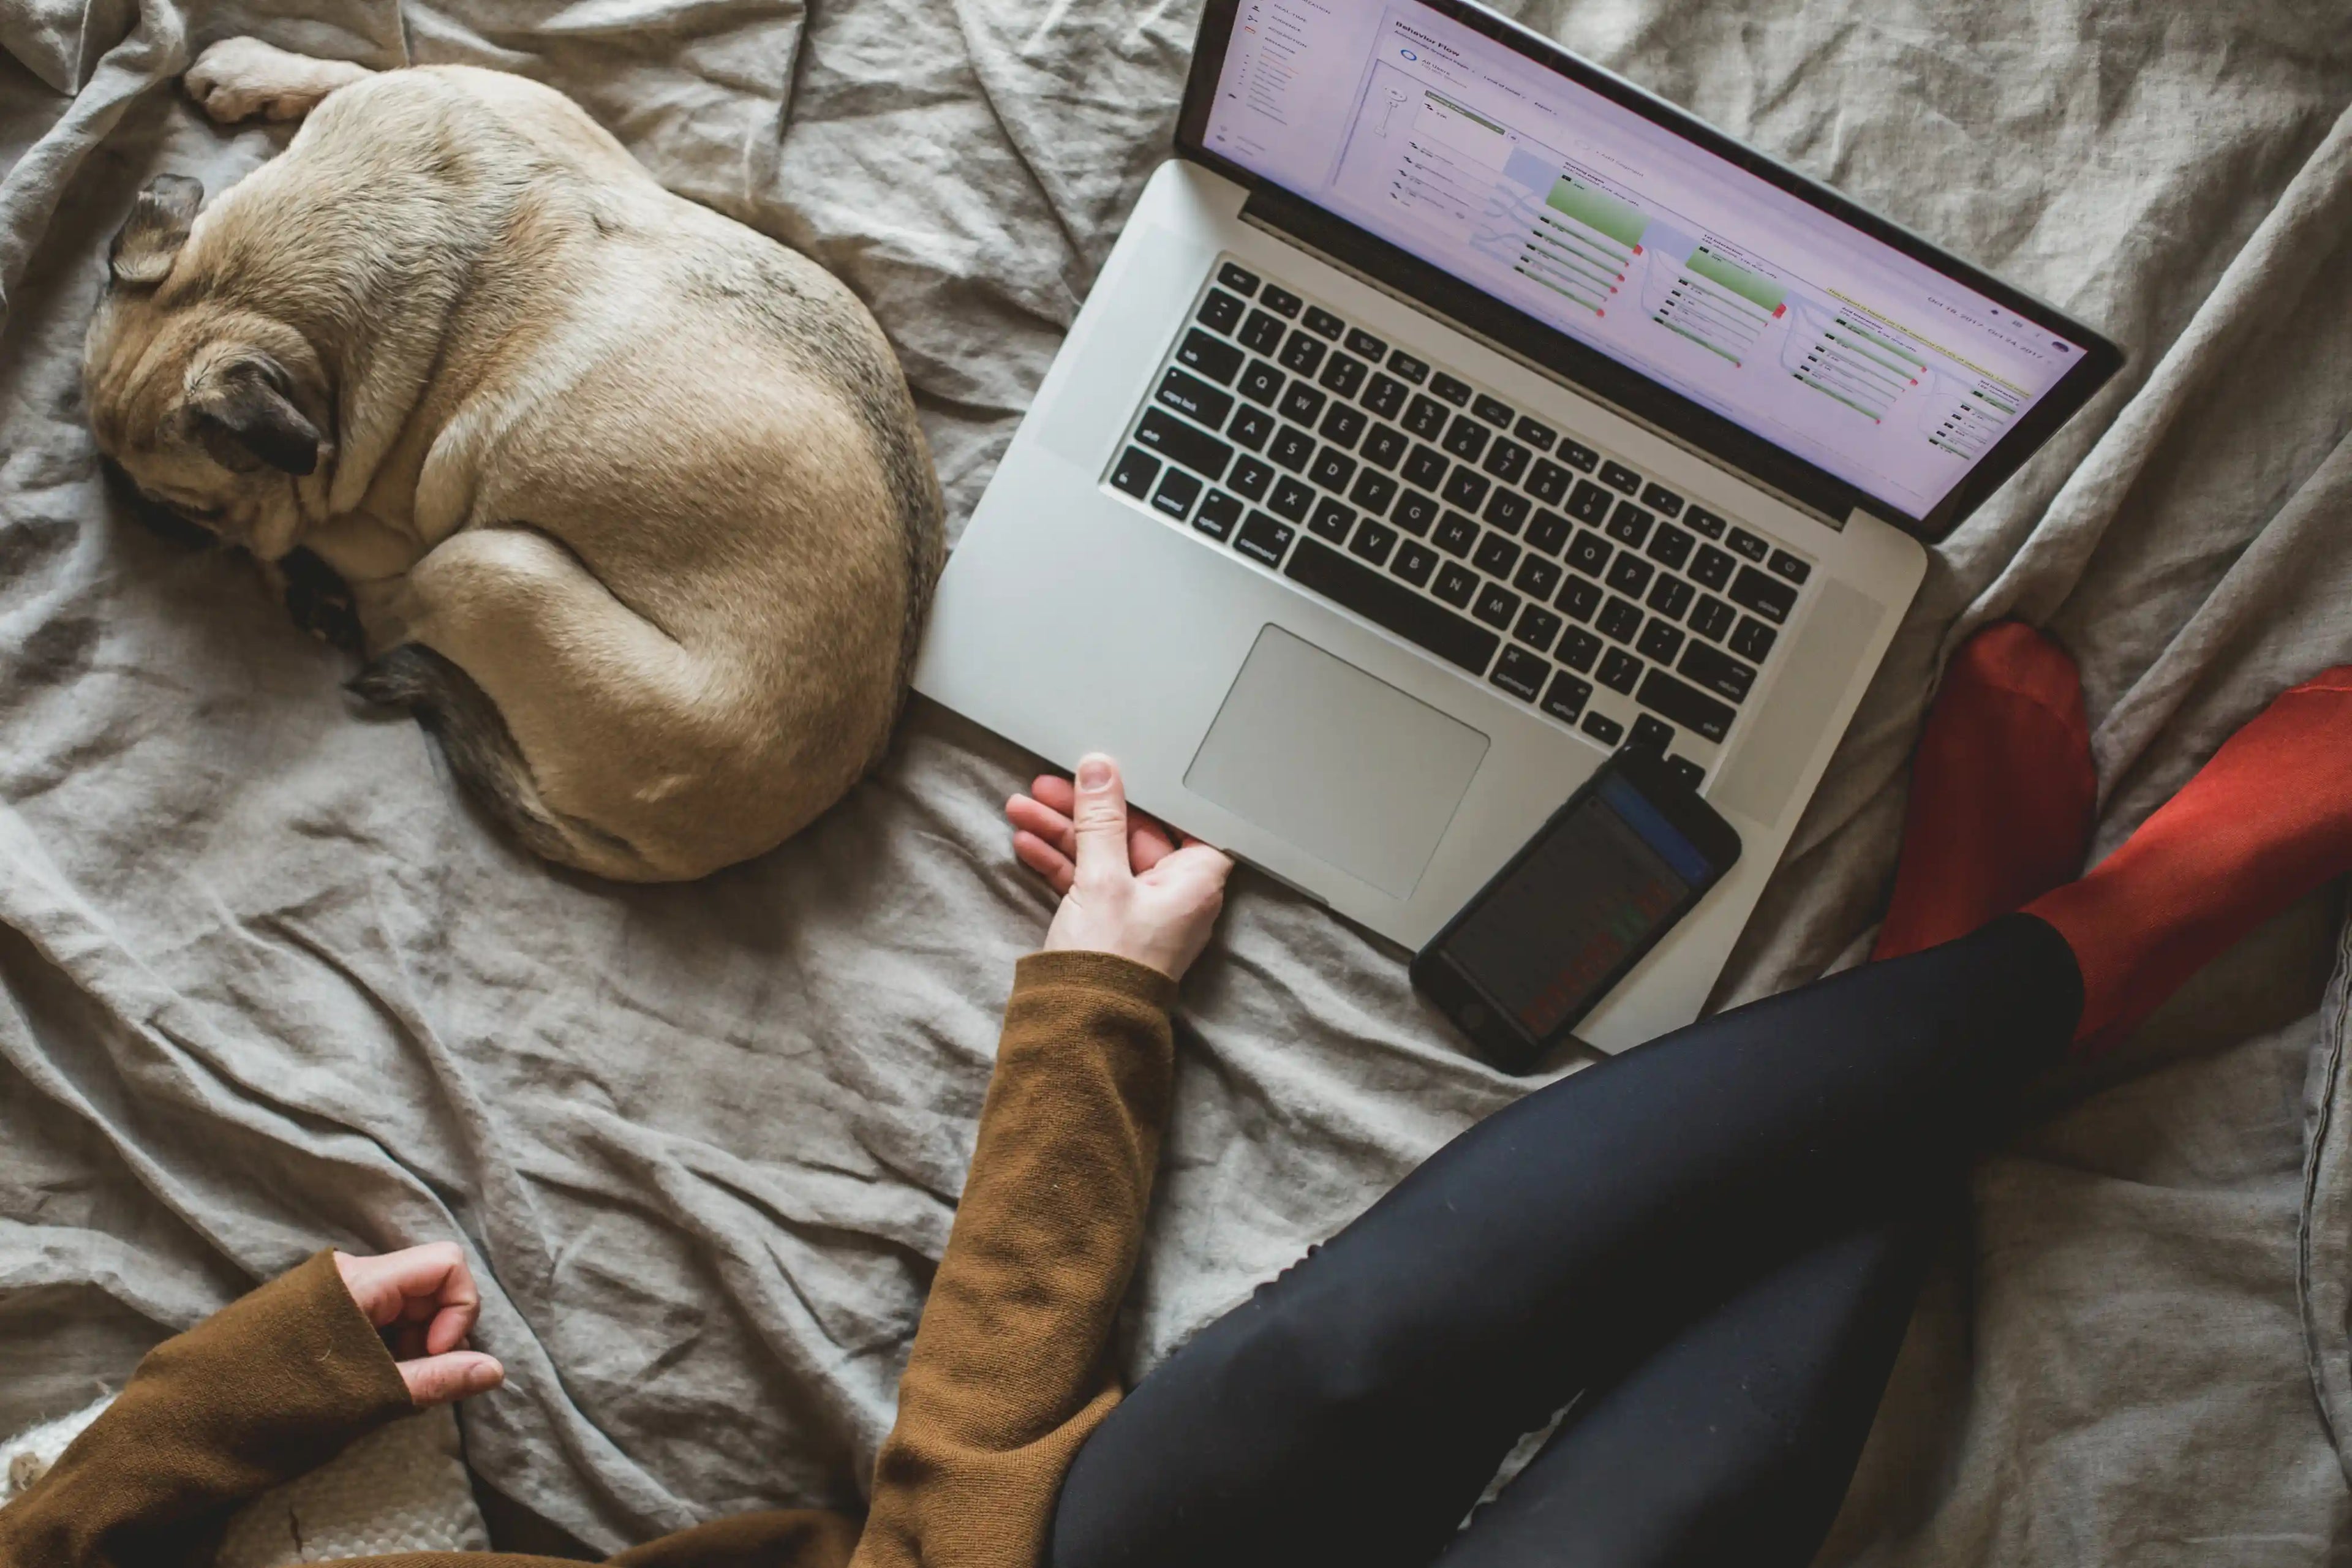 En dame som jobber hjemmefra med en laptop, mobiltelefon og en hund som ligger ved siden av.